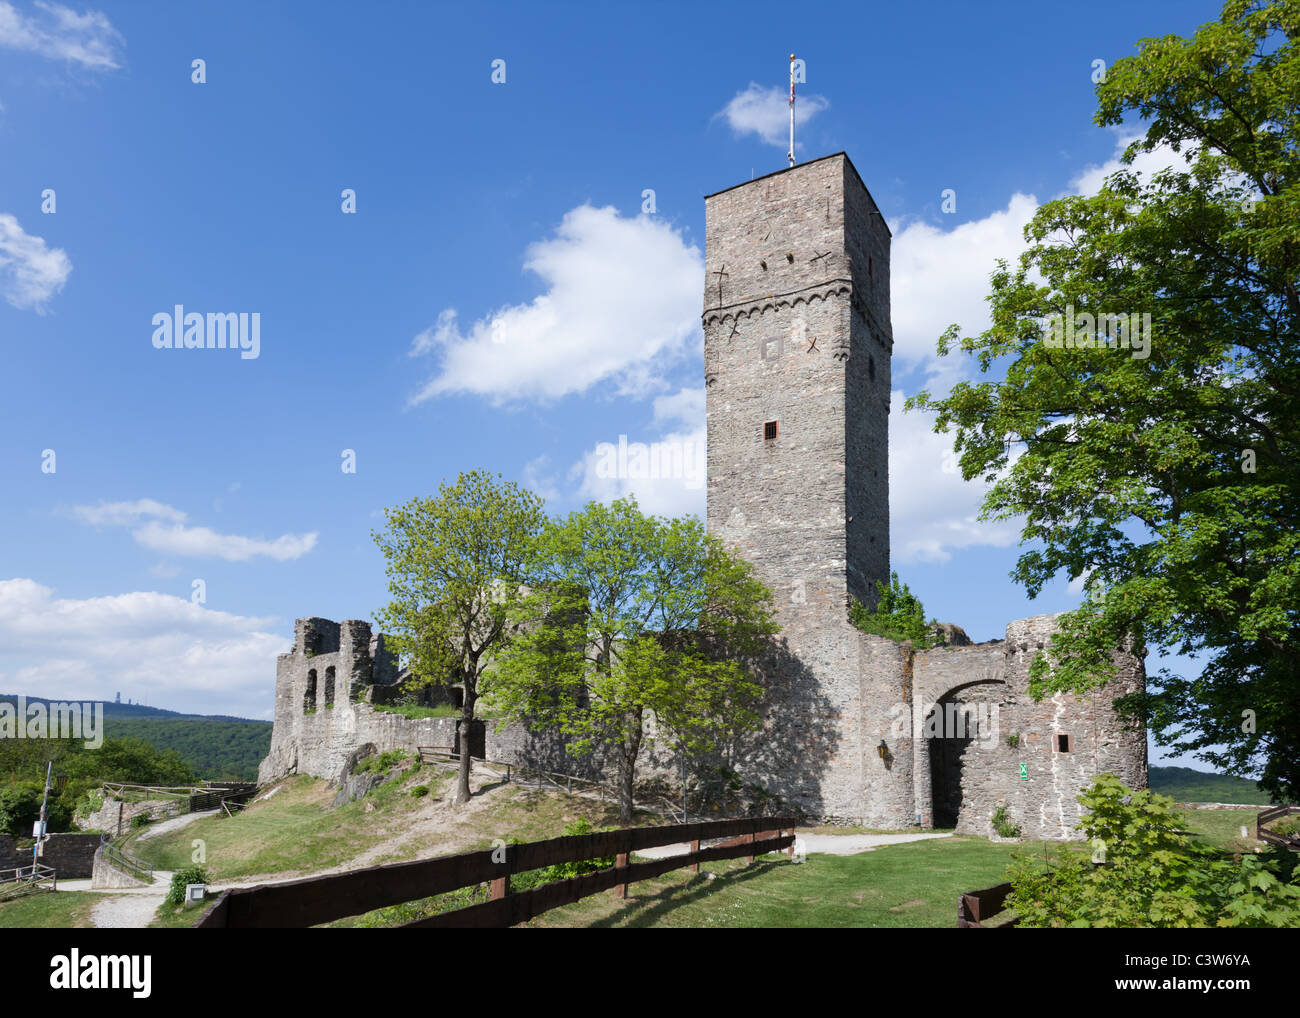 Le rovine del castello di Koenigstein, risalente in parti circa 800 anni. Koenigstein è situato nelle colline Taunus. Foto Stock